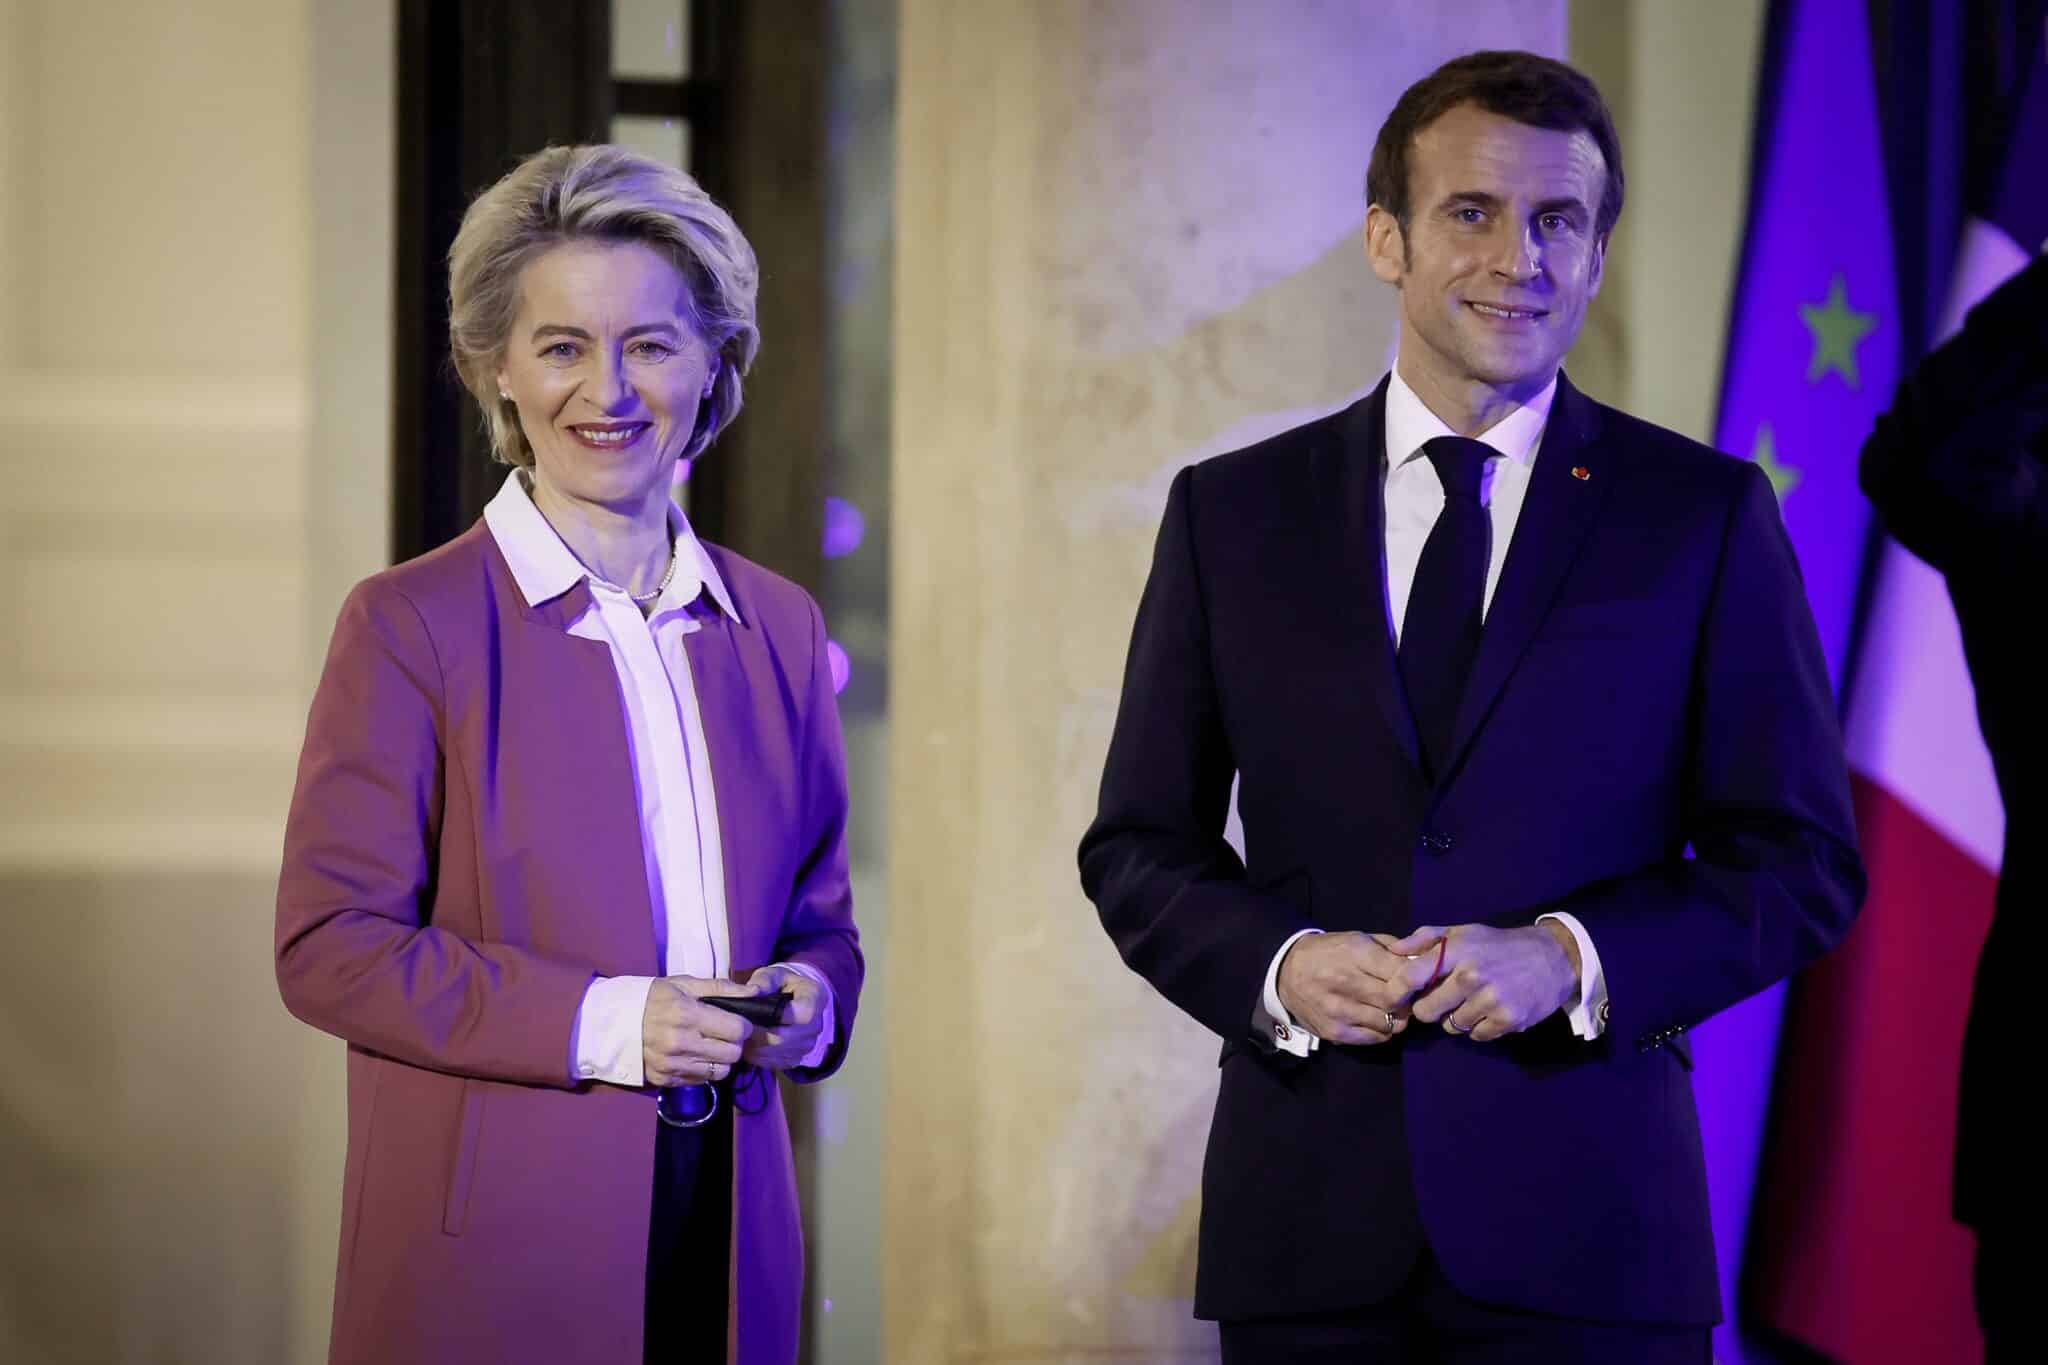 El presidente francés Emmanuel Macron (R) da la bienvenida a la presidenta de la Comisión Europea, Ursula von der Leyen, plantean antes de una reunión con miembros de la Comisión Europea en el Palacio del Elíseo